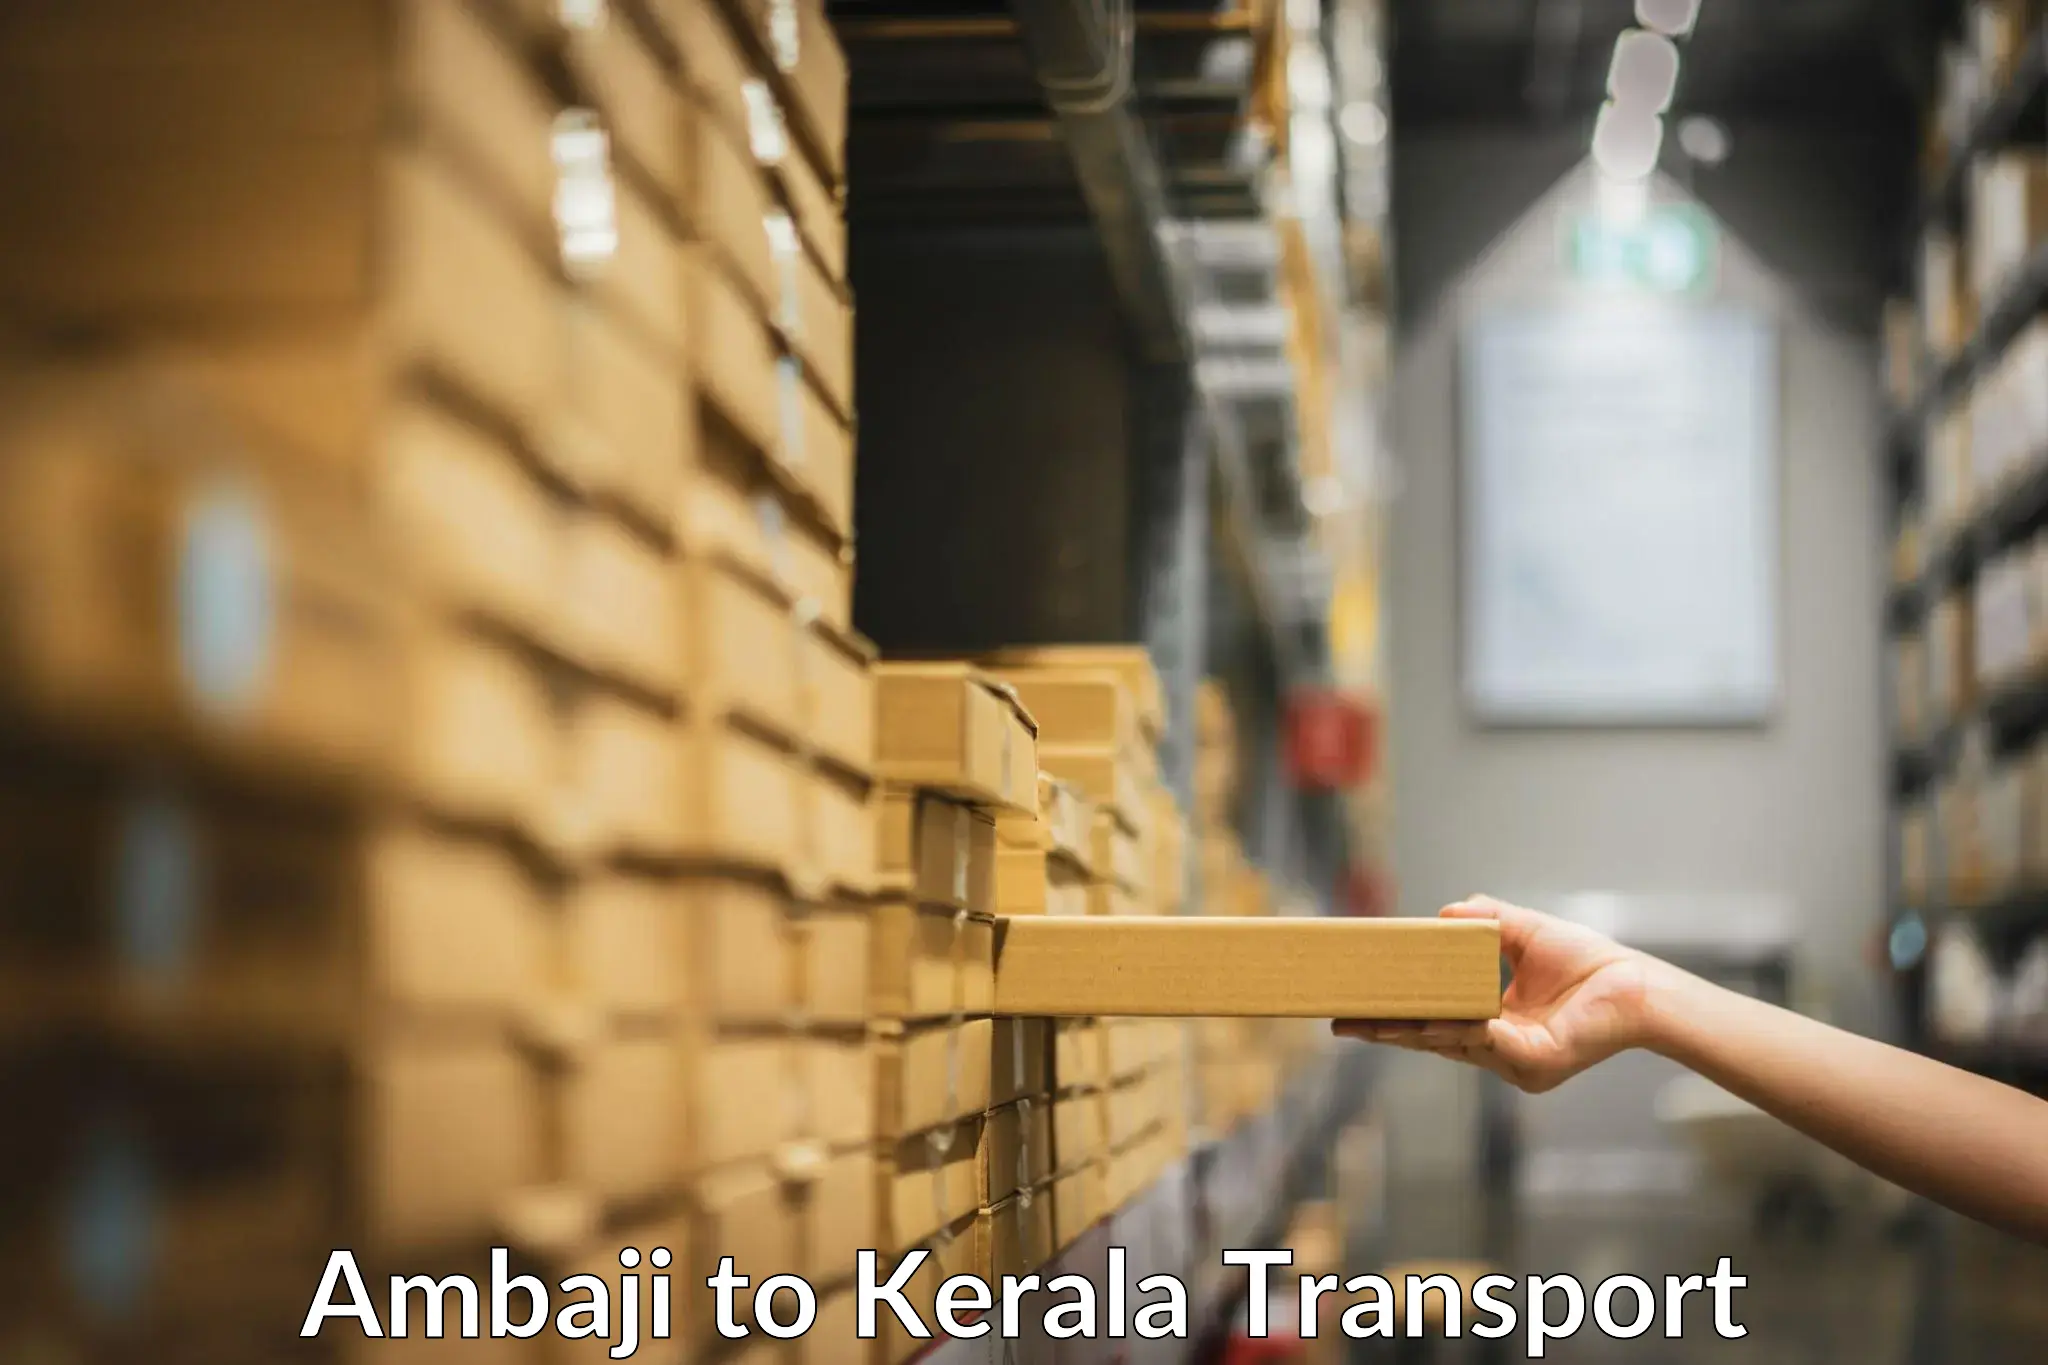 Truck transport companies in India Ambaji to Mundakayam